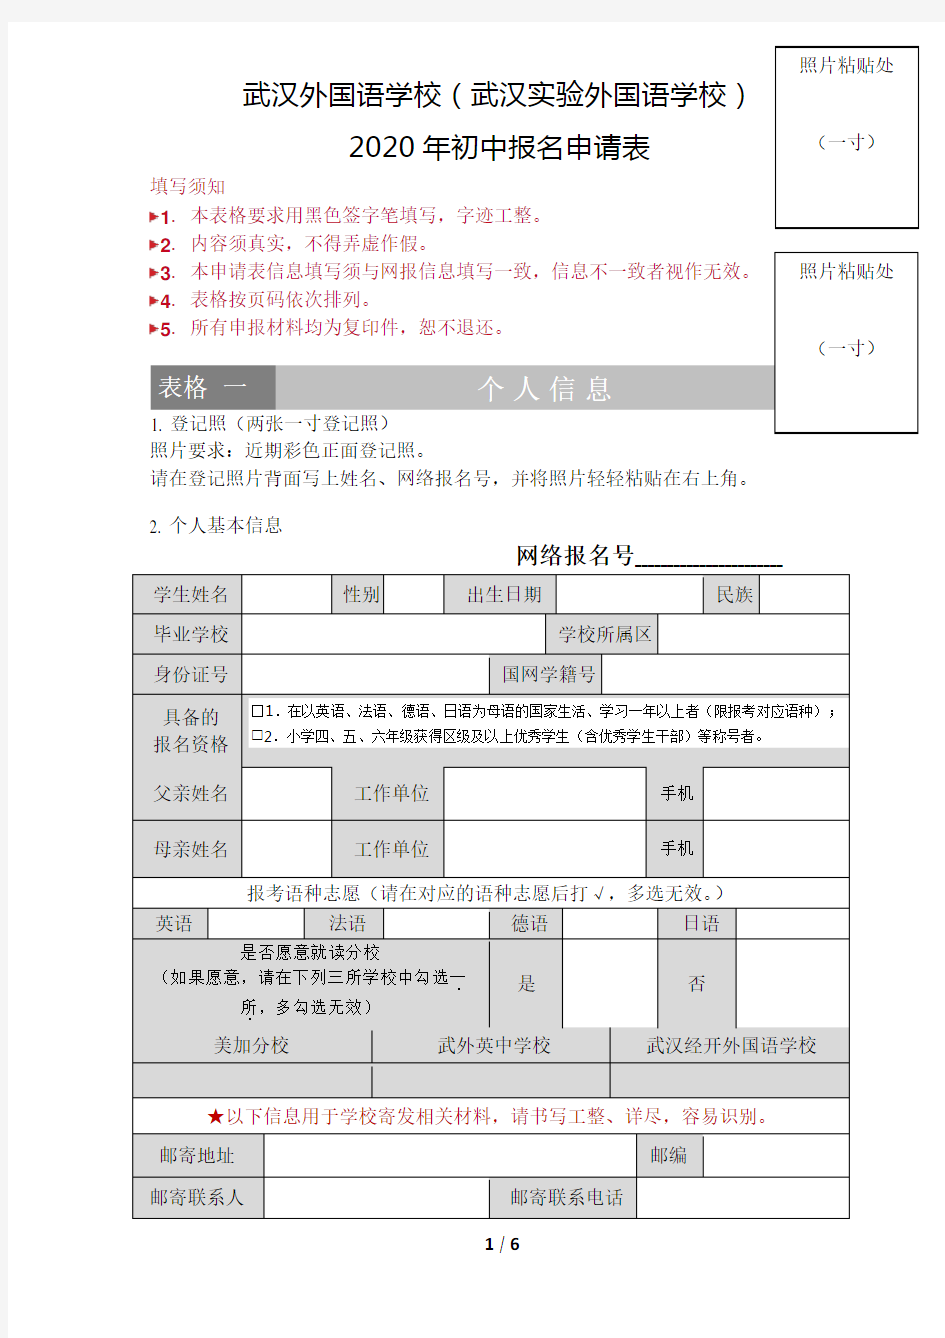 武汉外国语学校(武汉实验外国语学校)初中部2020年报名申请表